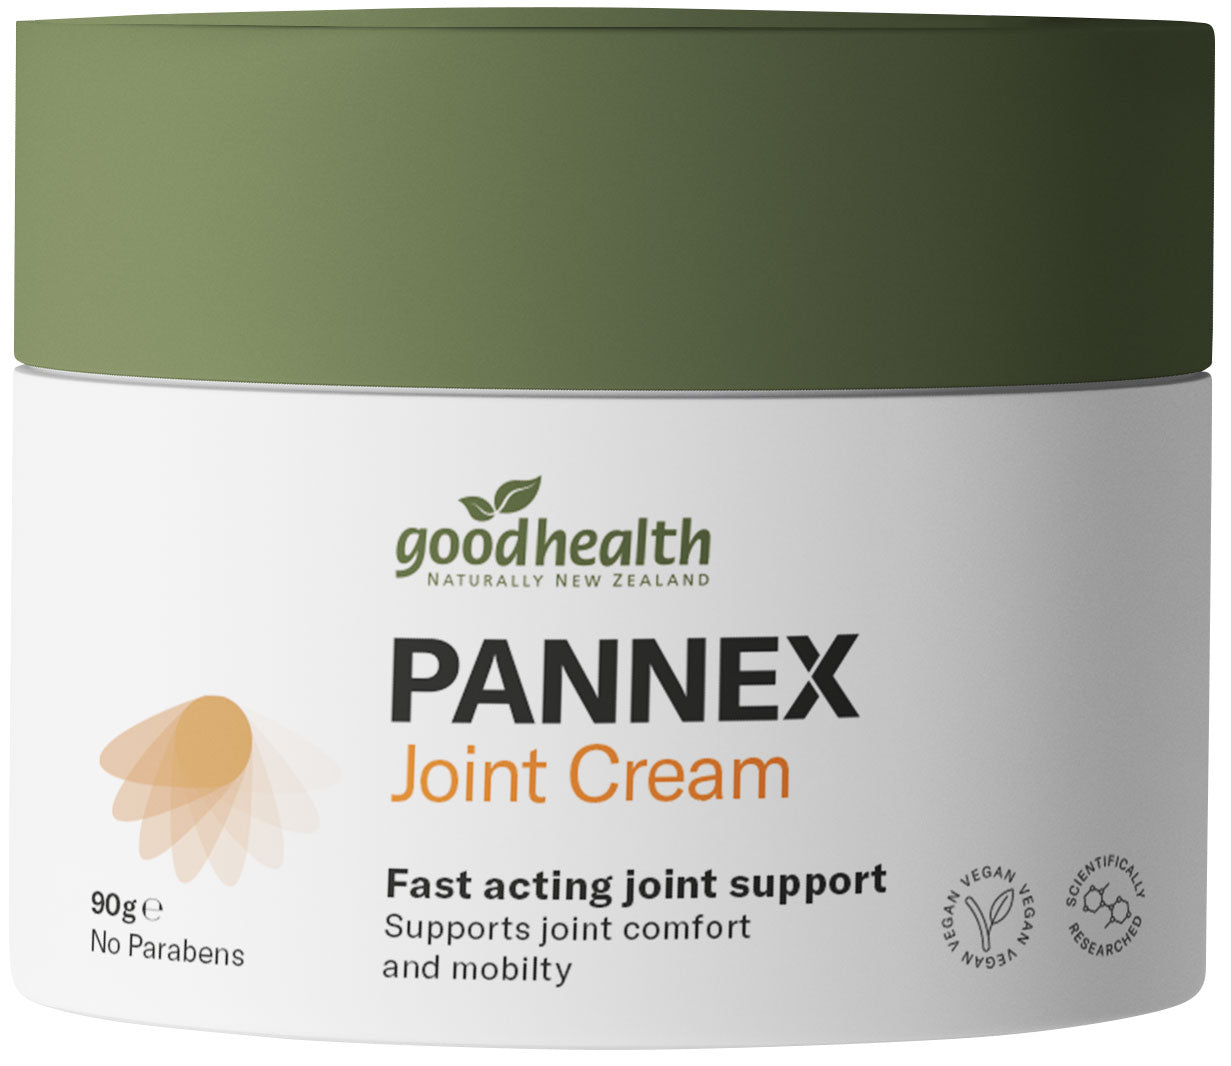 Good health Pannex Joint Cream 90g